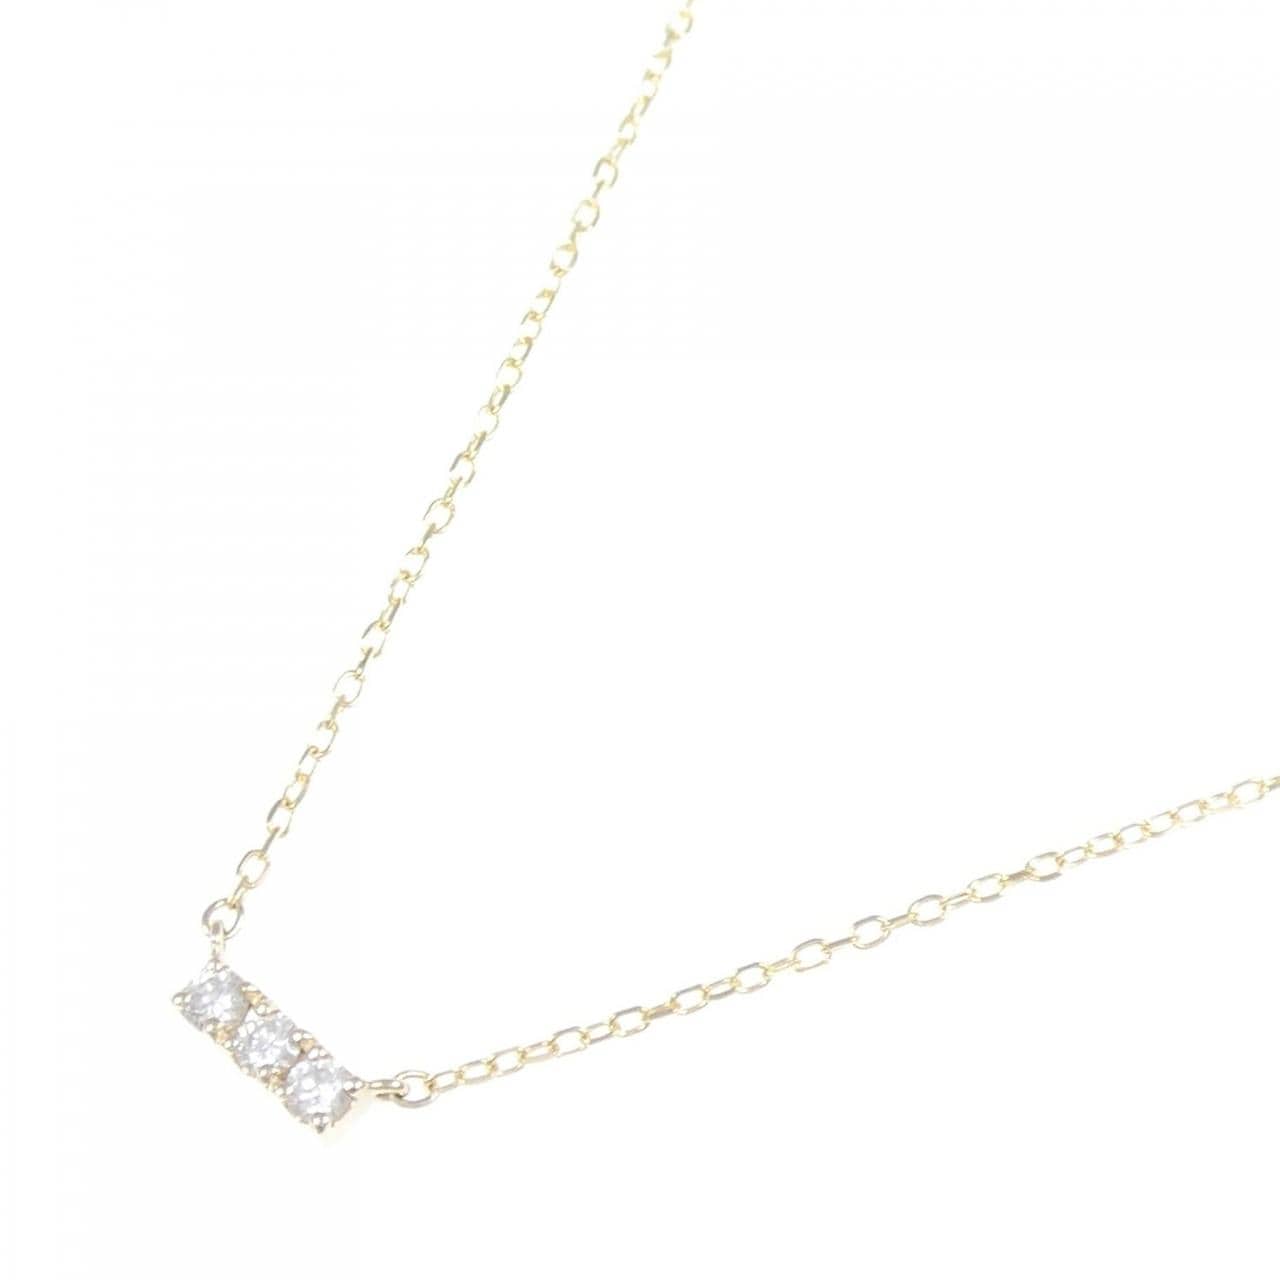 K10YG Diamond necklace